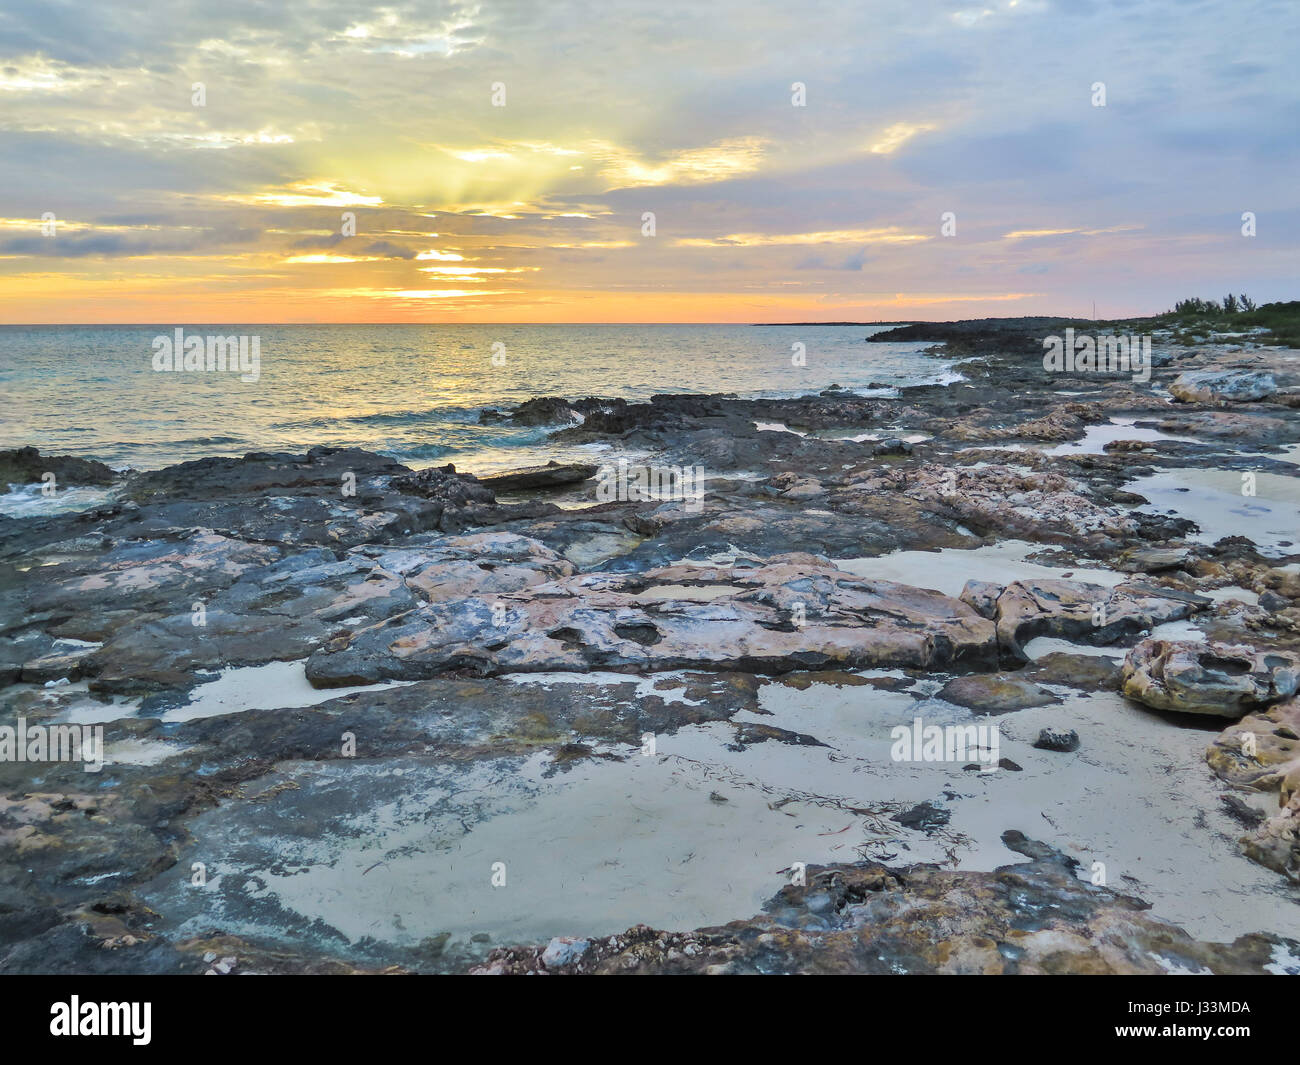 Rocky beach at sun set, in Gun Cay, Bahamas. Stock Photo